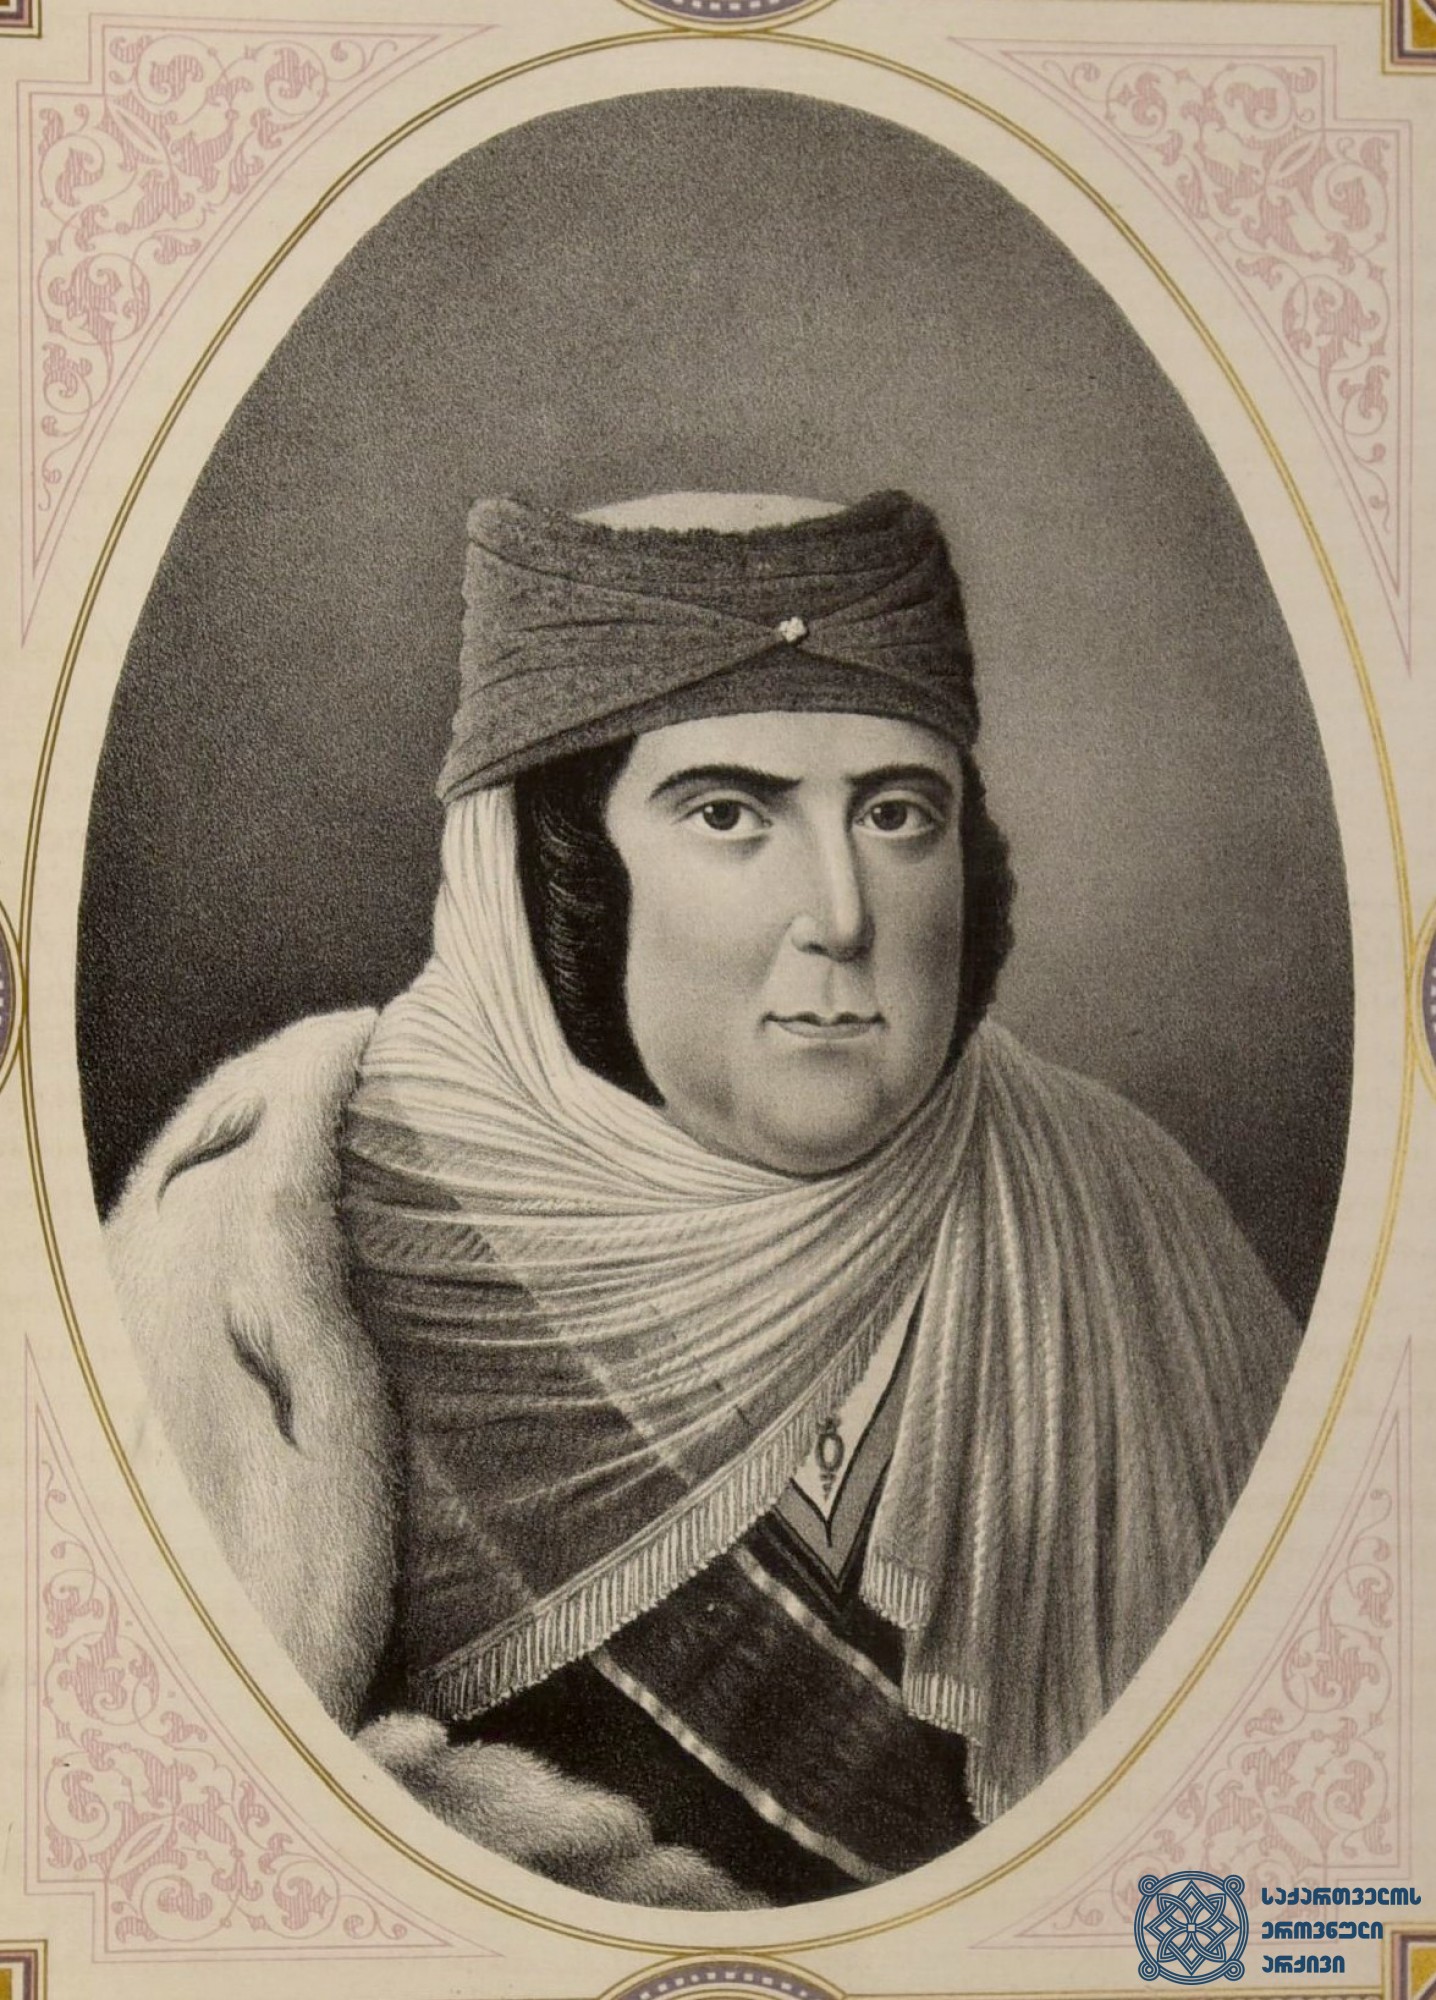 დარეჯან დედოფალი. <br>
კაცია დადიანის ასული (1734-1807). <br>
მეფე ერეკლე II-ის მესამე ცოლი. <br>
წიგნიდან "Акты Собранные Кавказского Археографическою Комисиею, т. IV, Тифлис“, 1869.